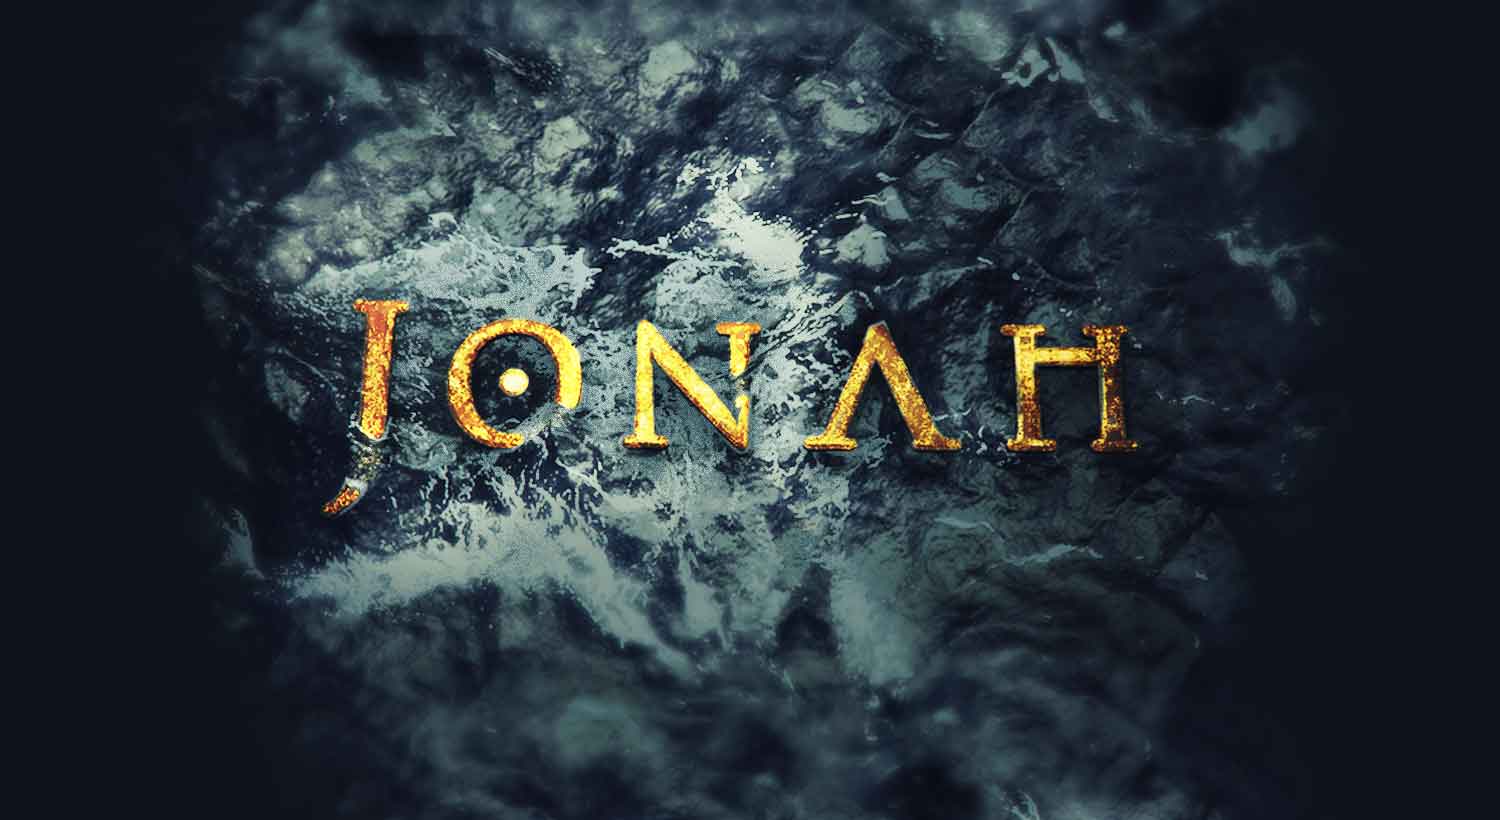 ocean waves crashing on the name Jonah